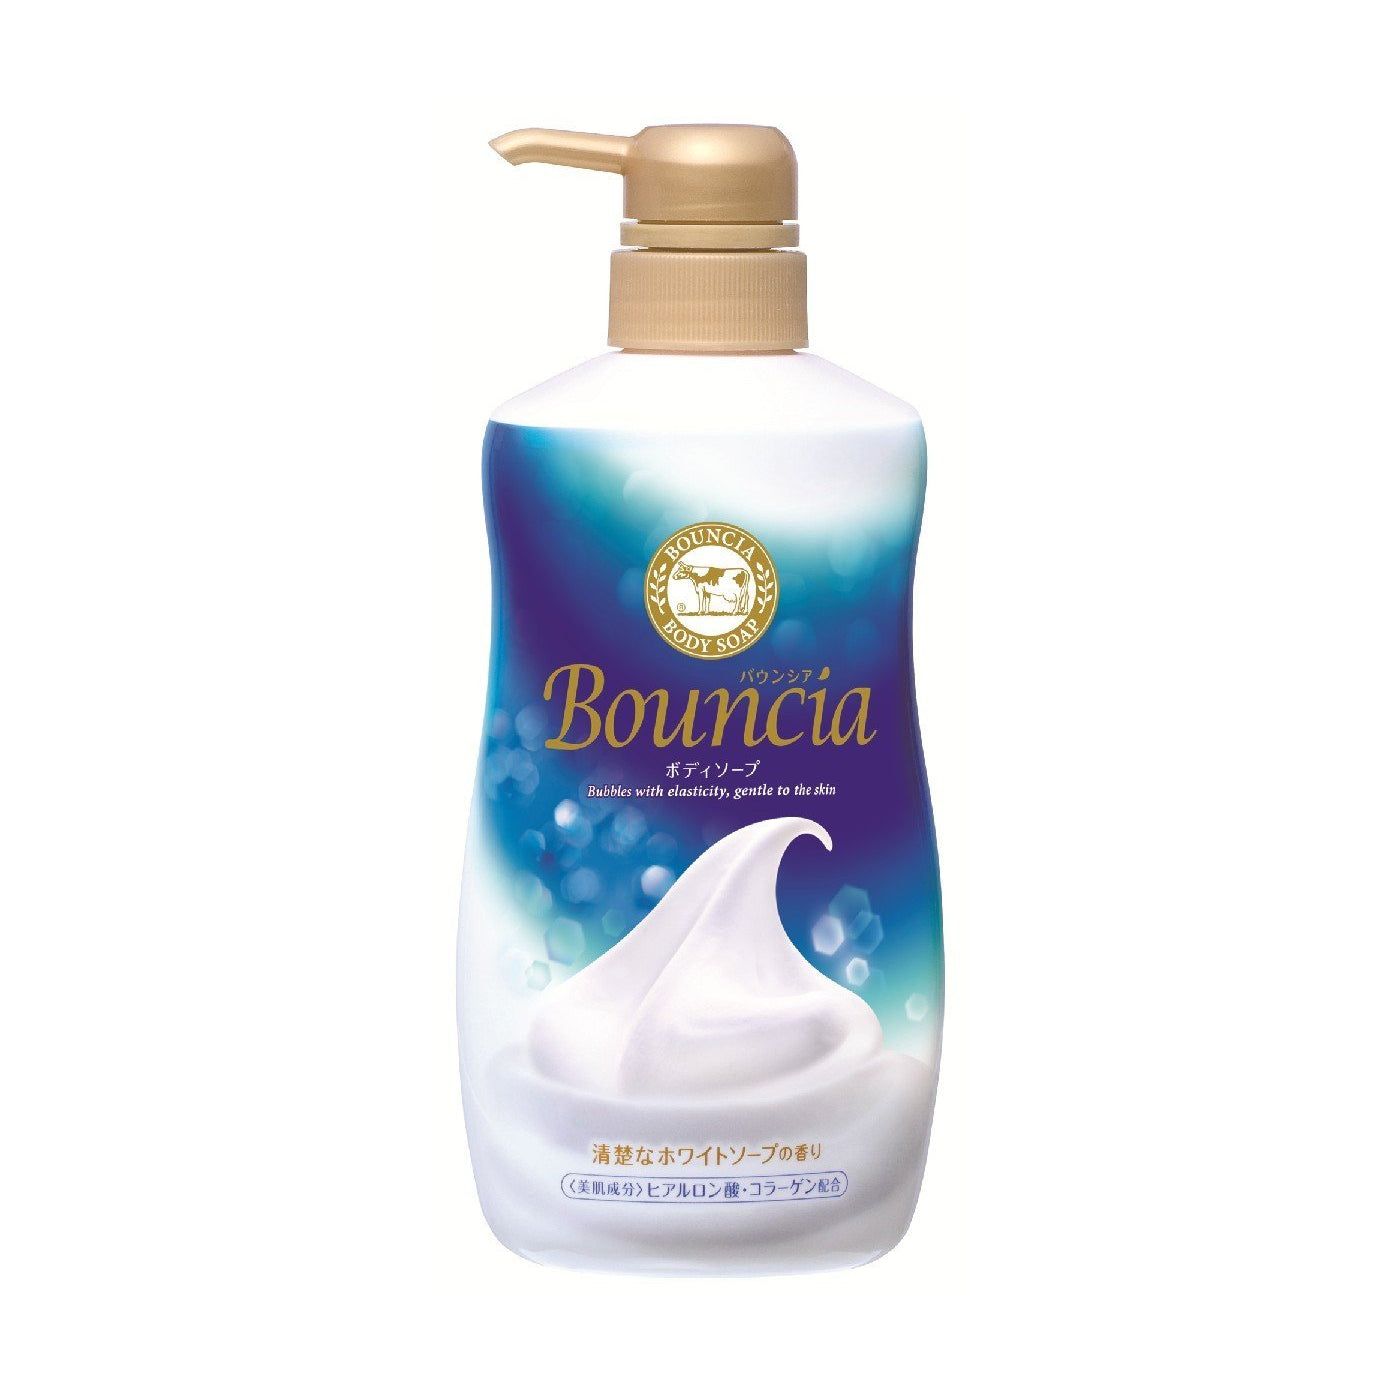 Gyunyu Bouncia Bouncia Body White Soap Pump